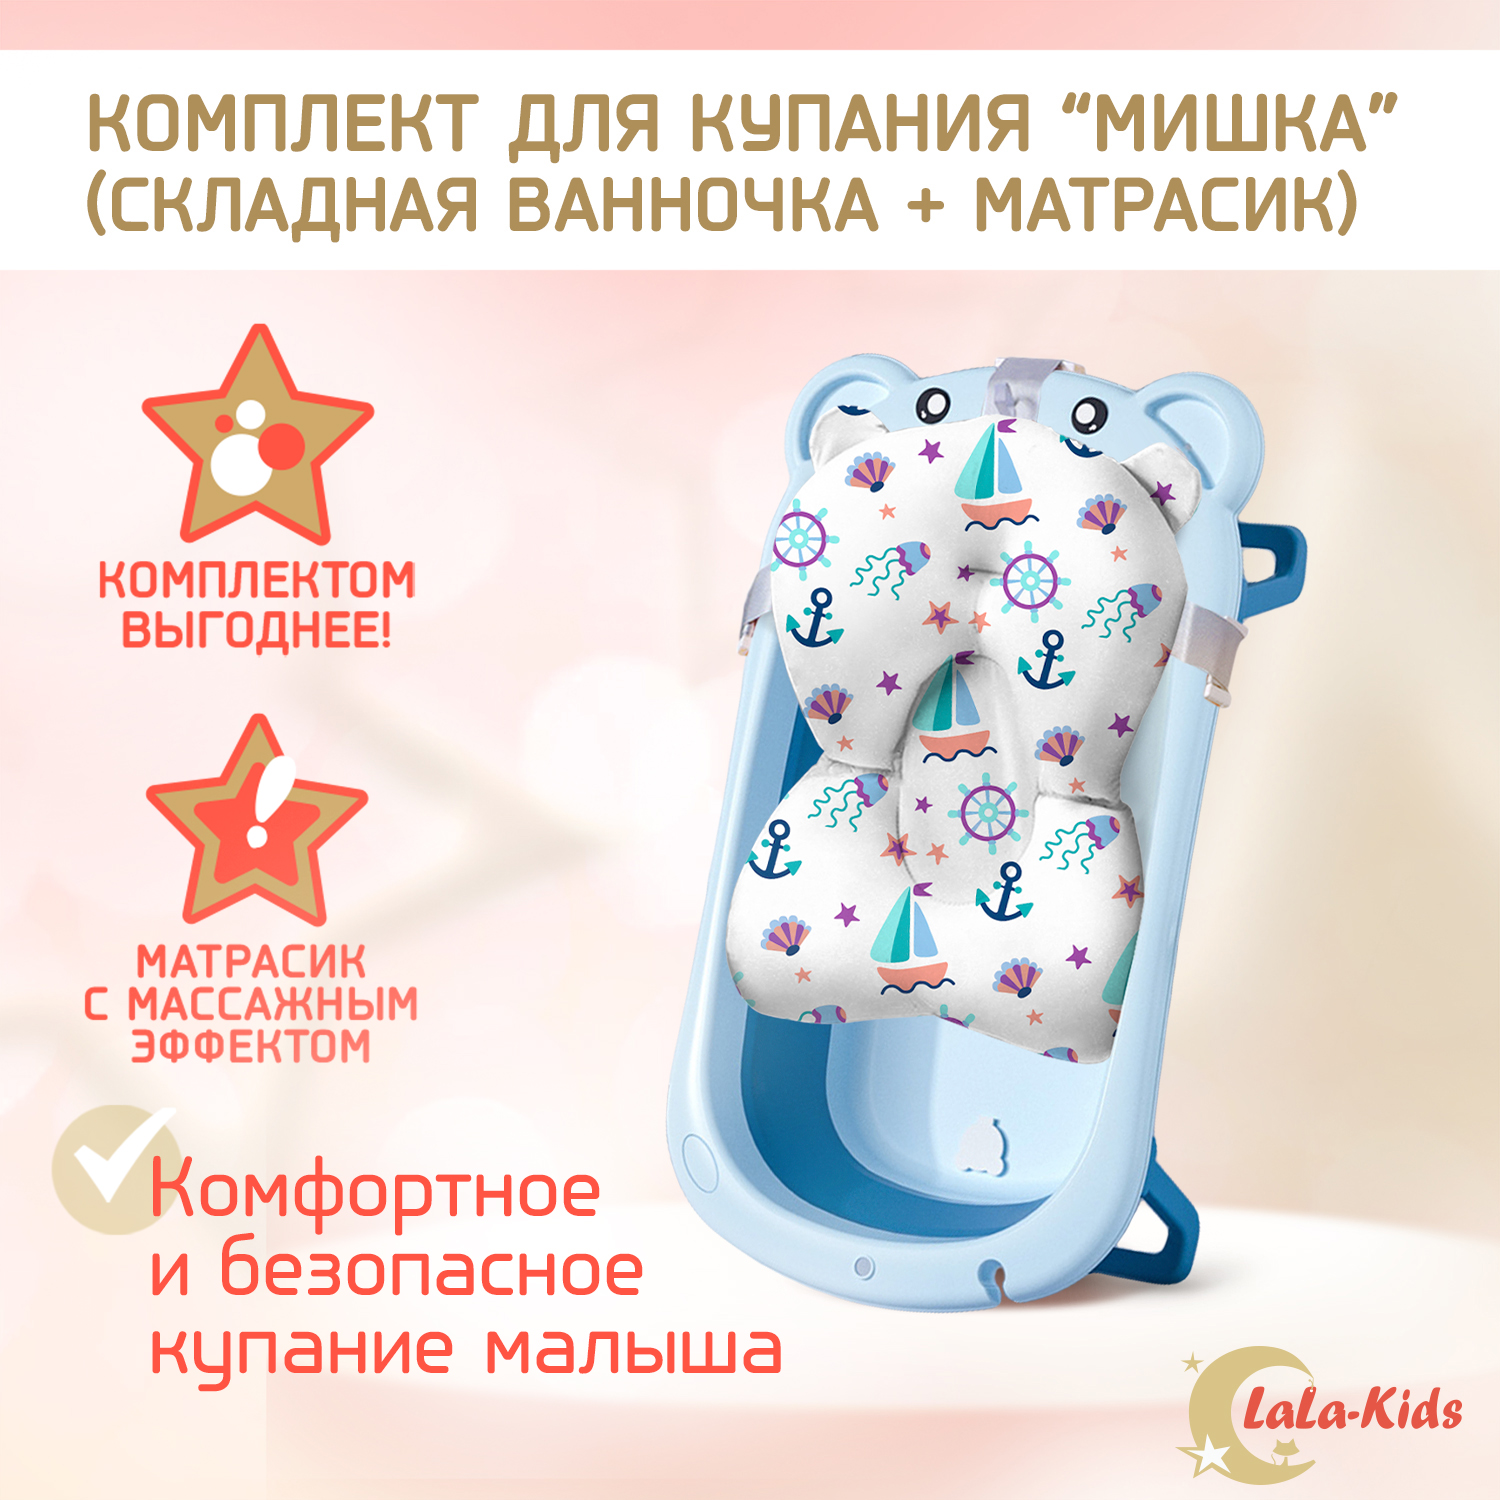 Ванночка для новорожденных LaLa-Kids складная с матрасиком ярко-голубым в комплекте - фото 2